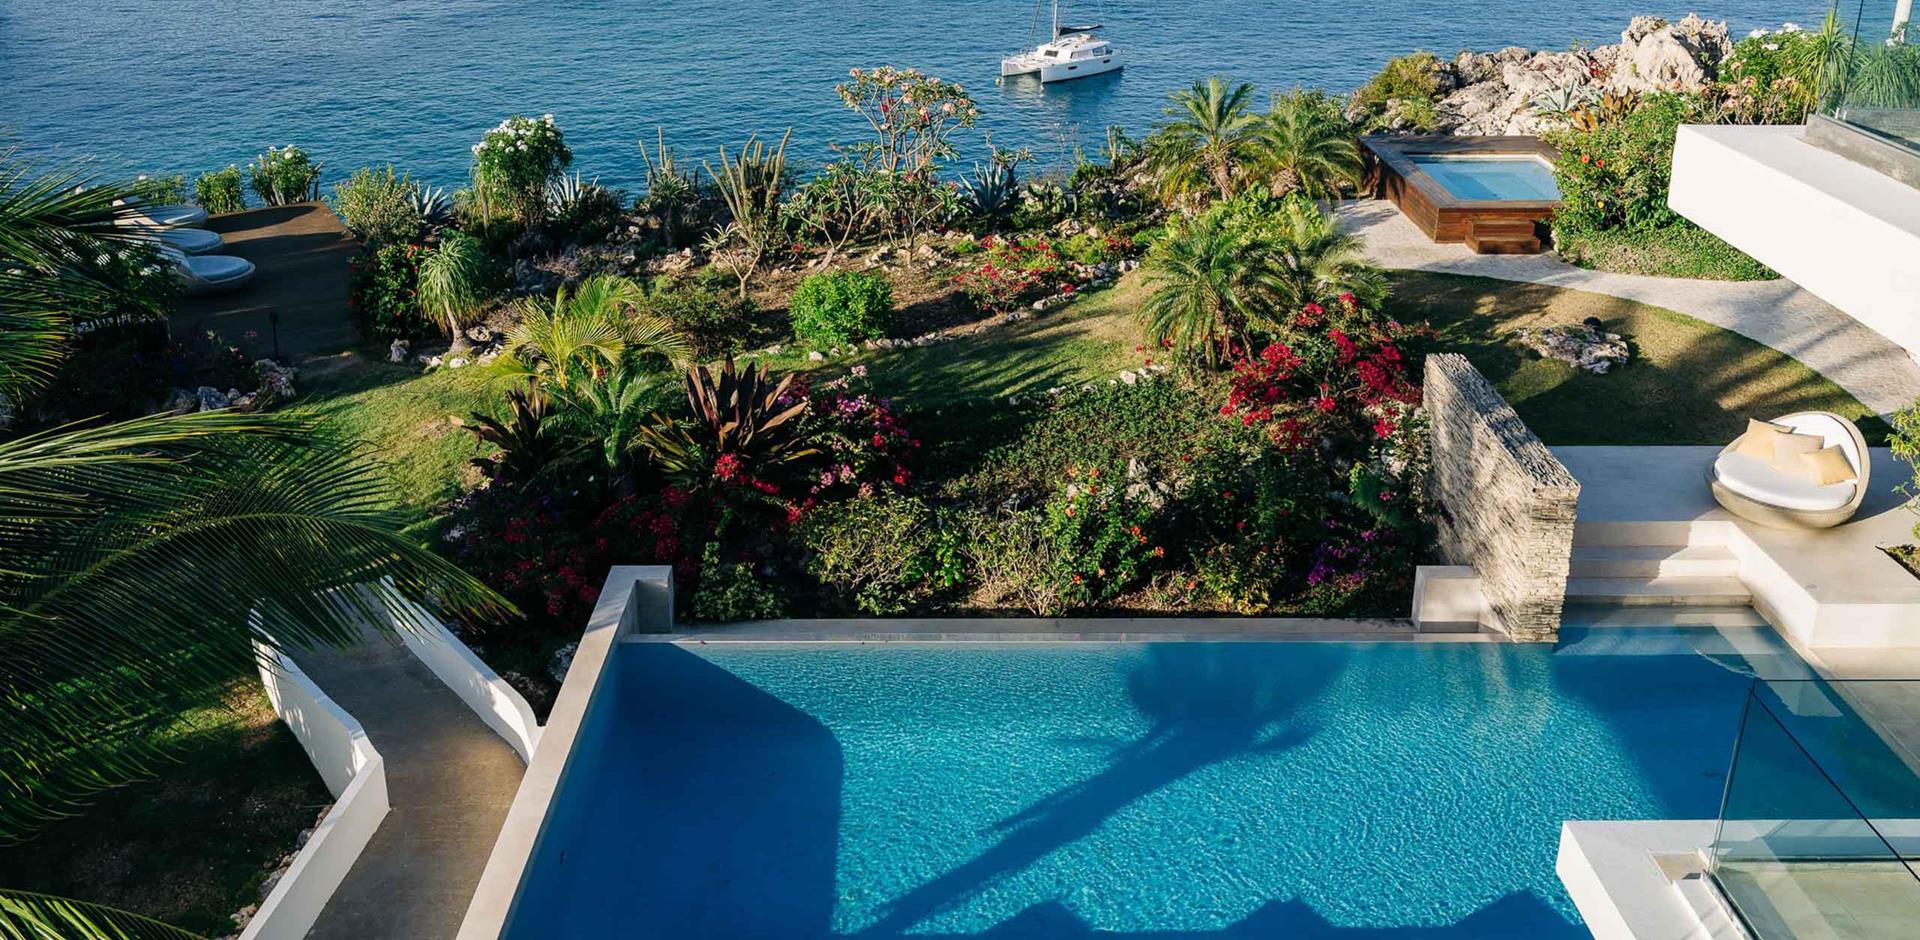 South villa pool view, ÀNI Anguilla